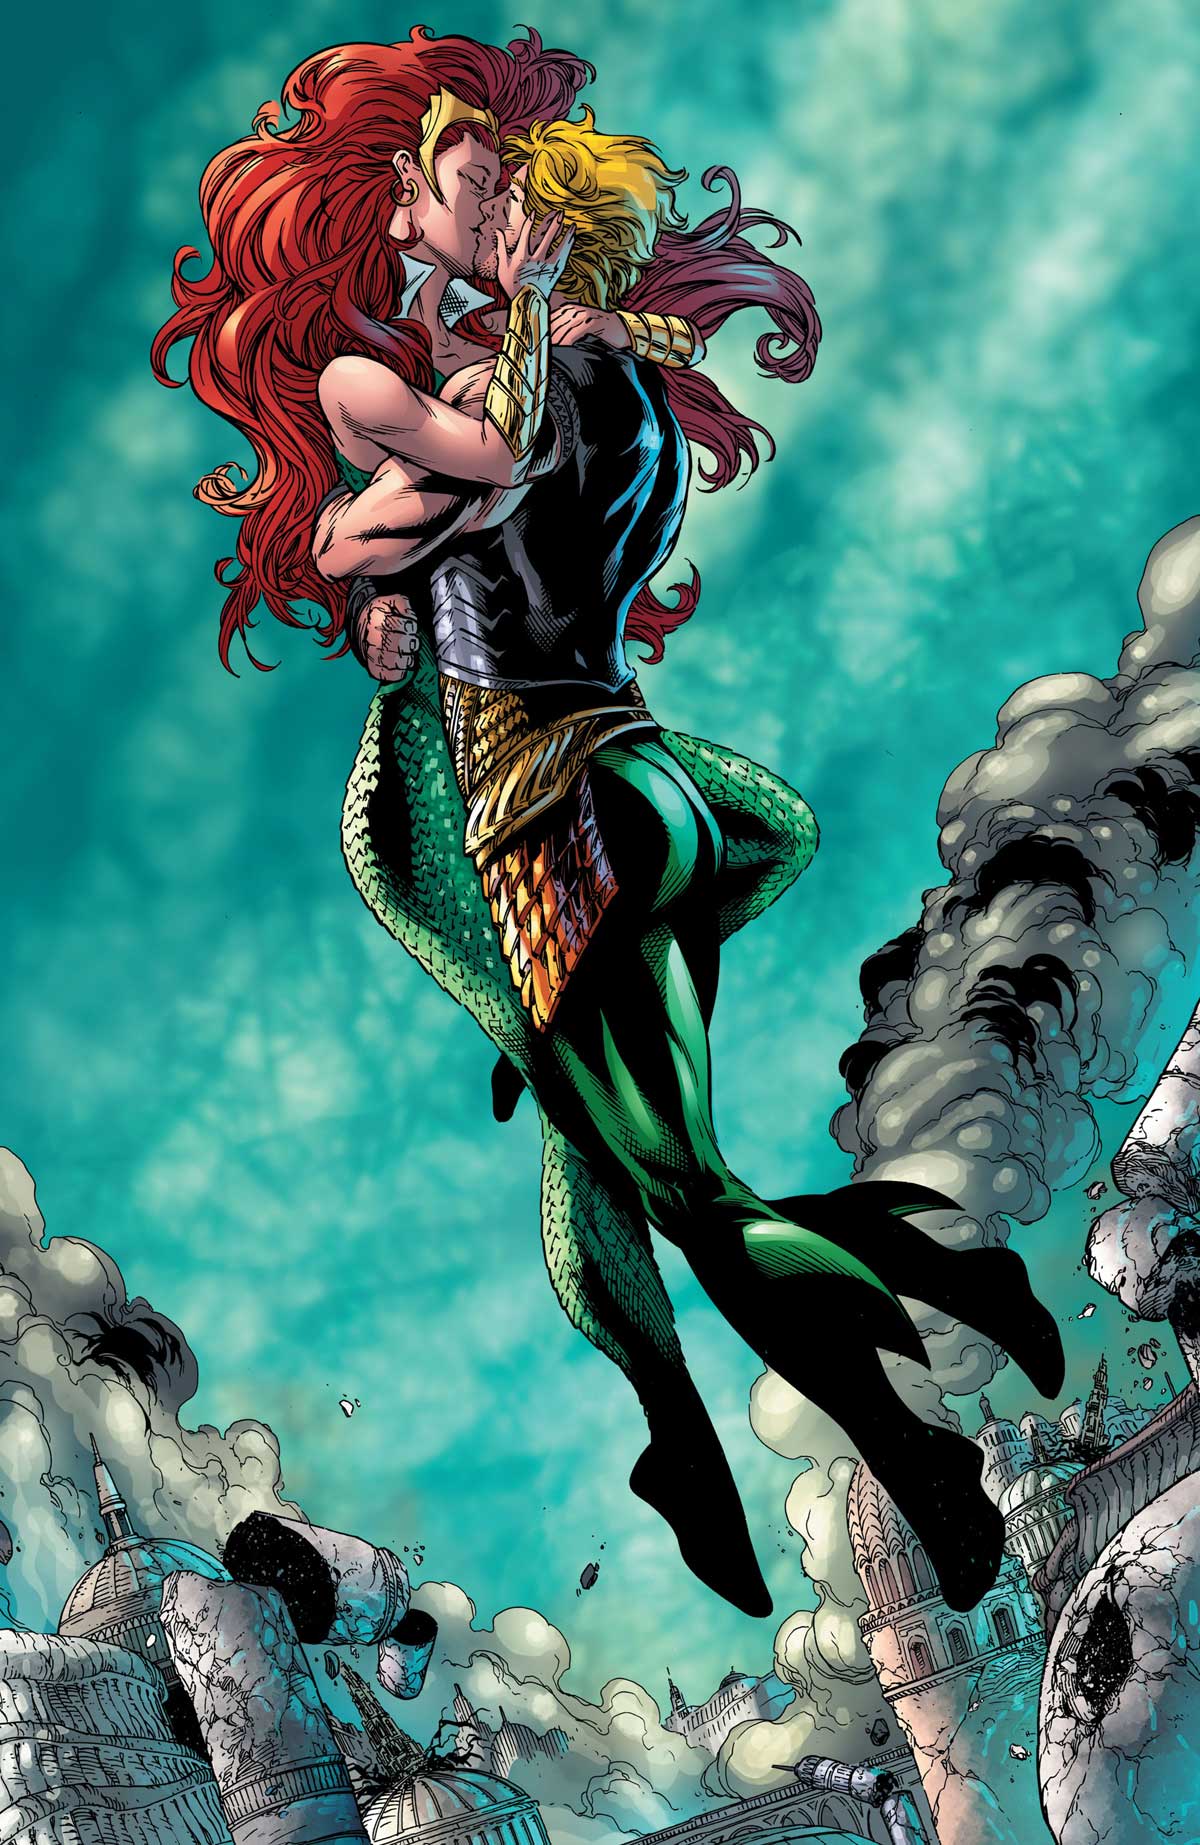 Aquaman #48